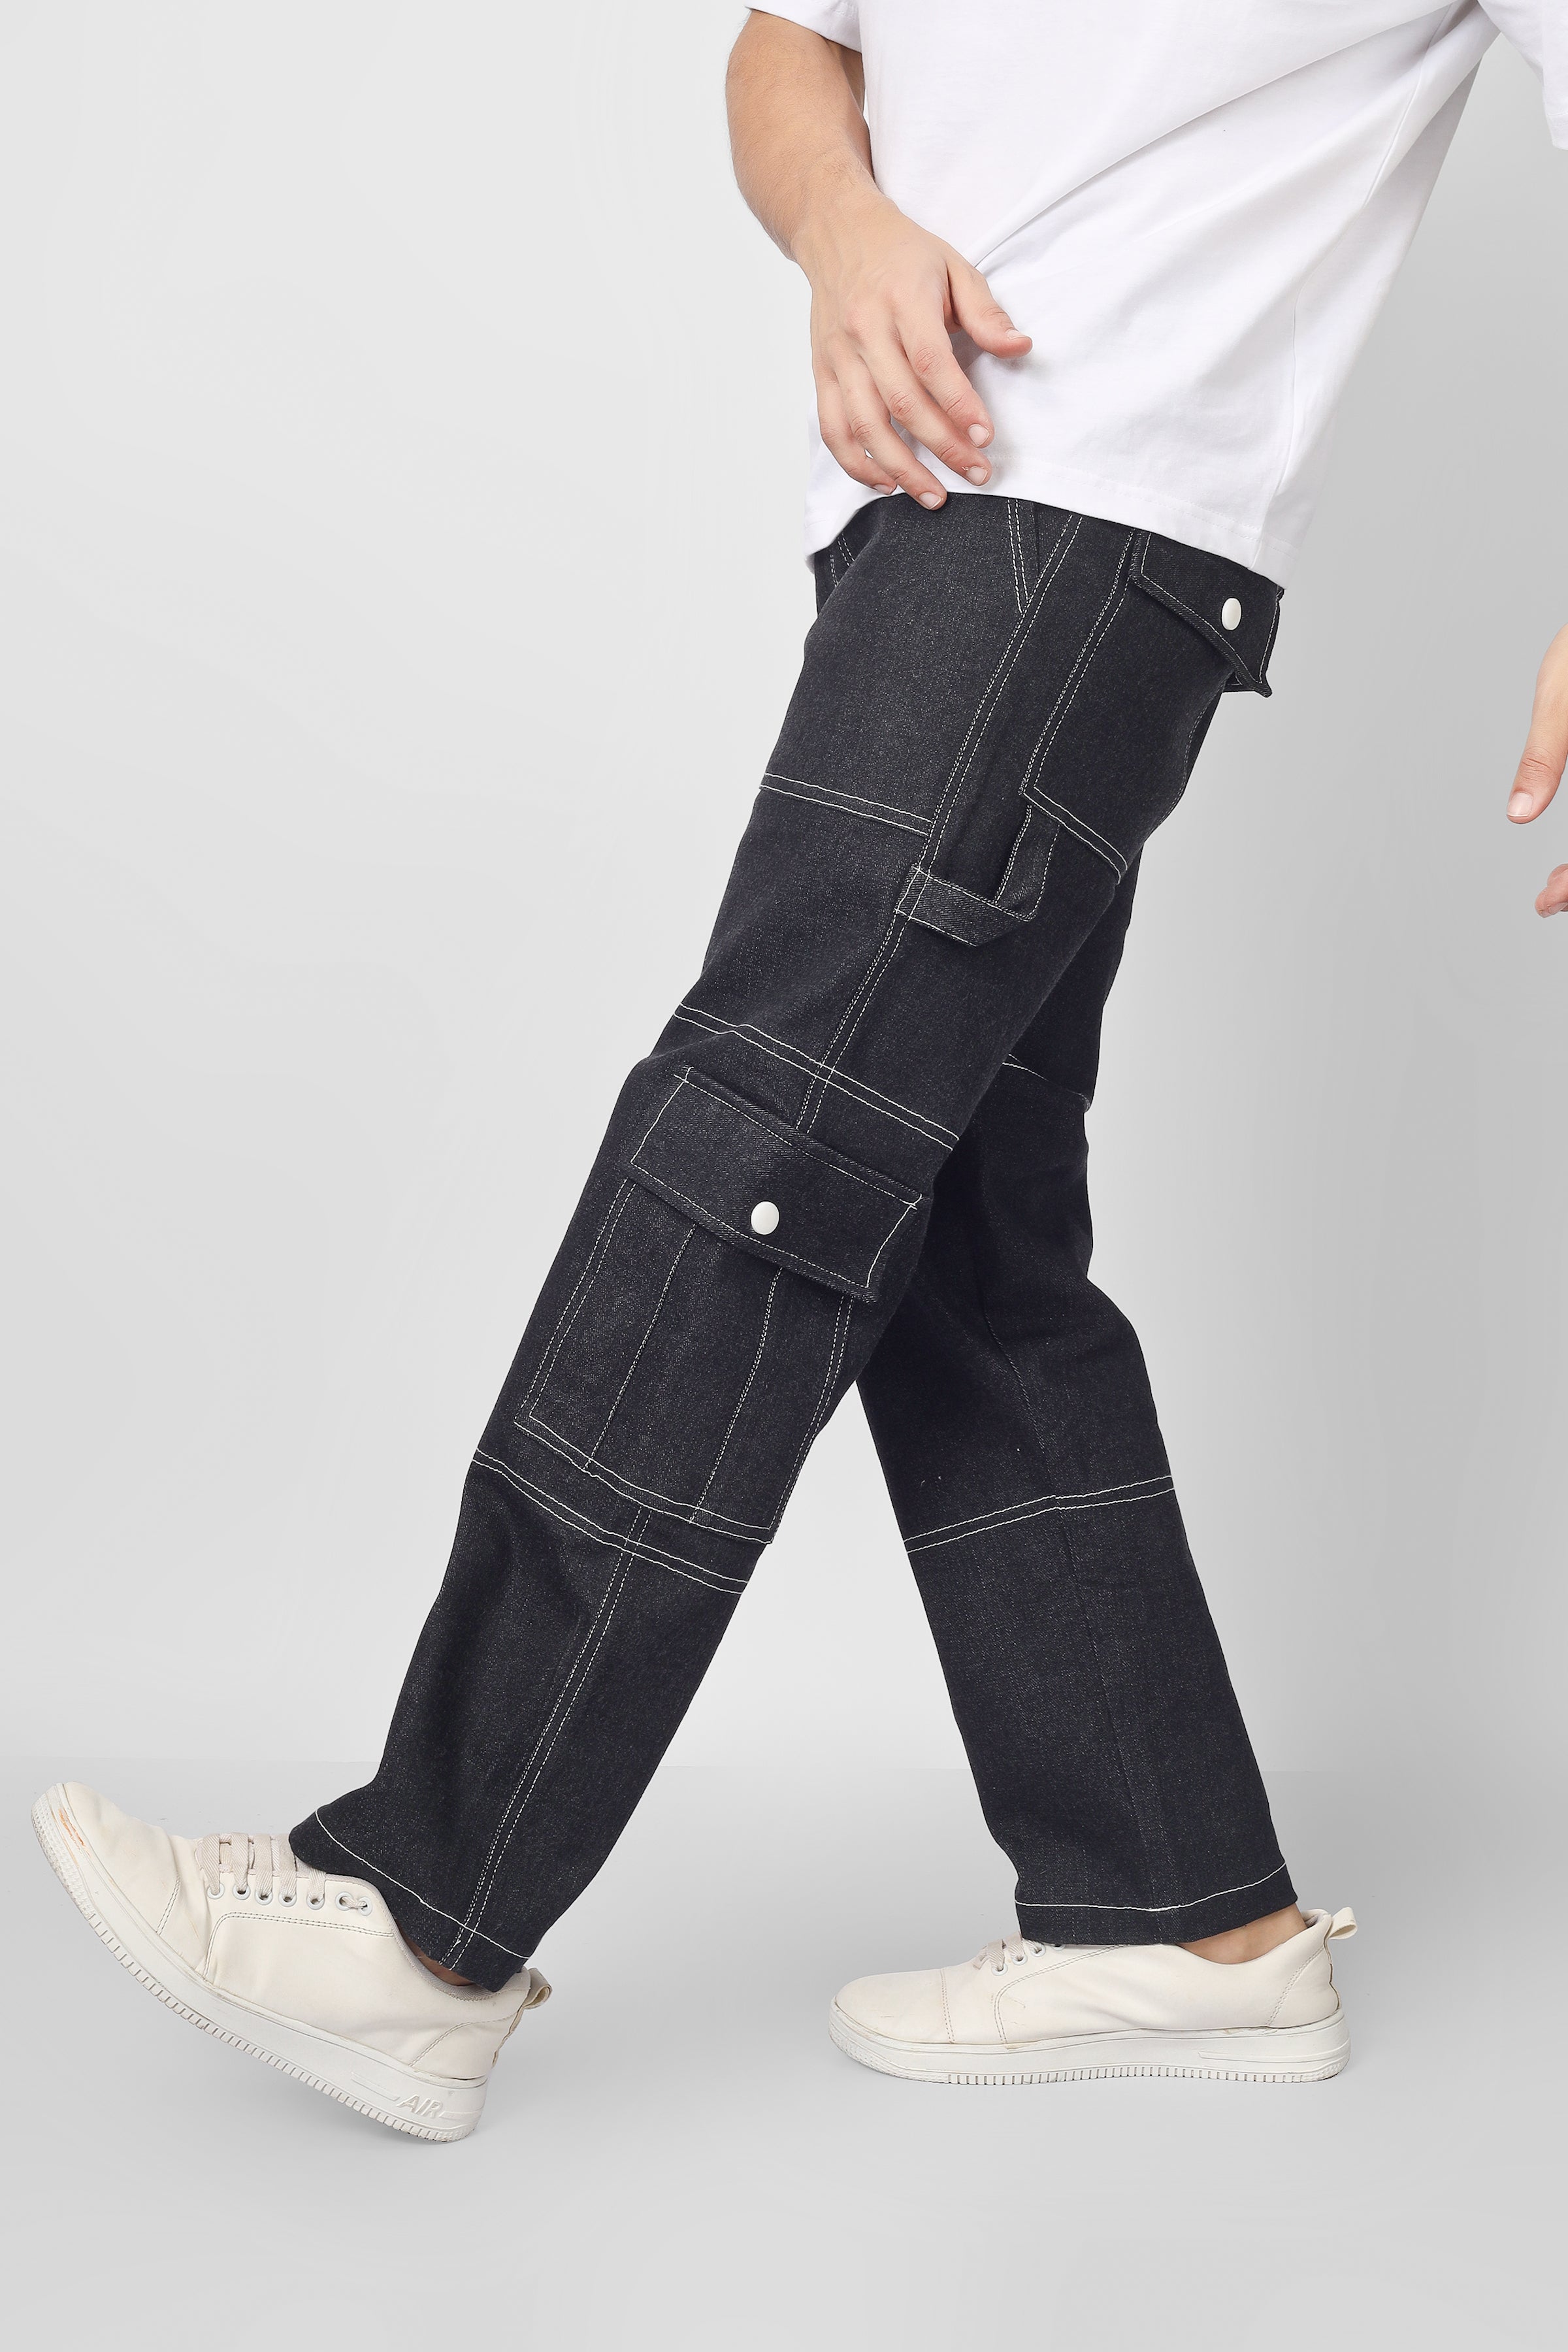 Dominance Cargo Trousers for men – Dominance Intl